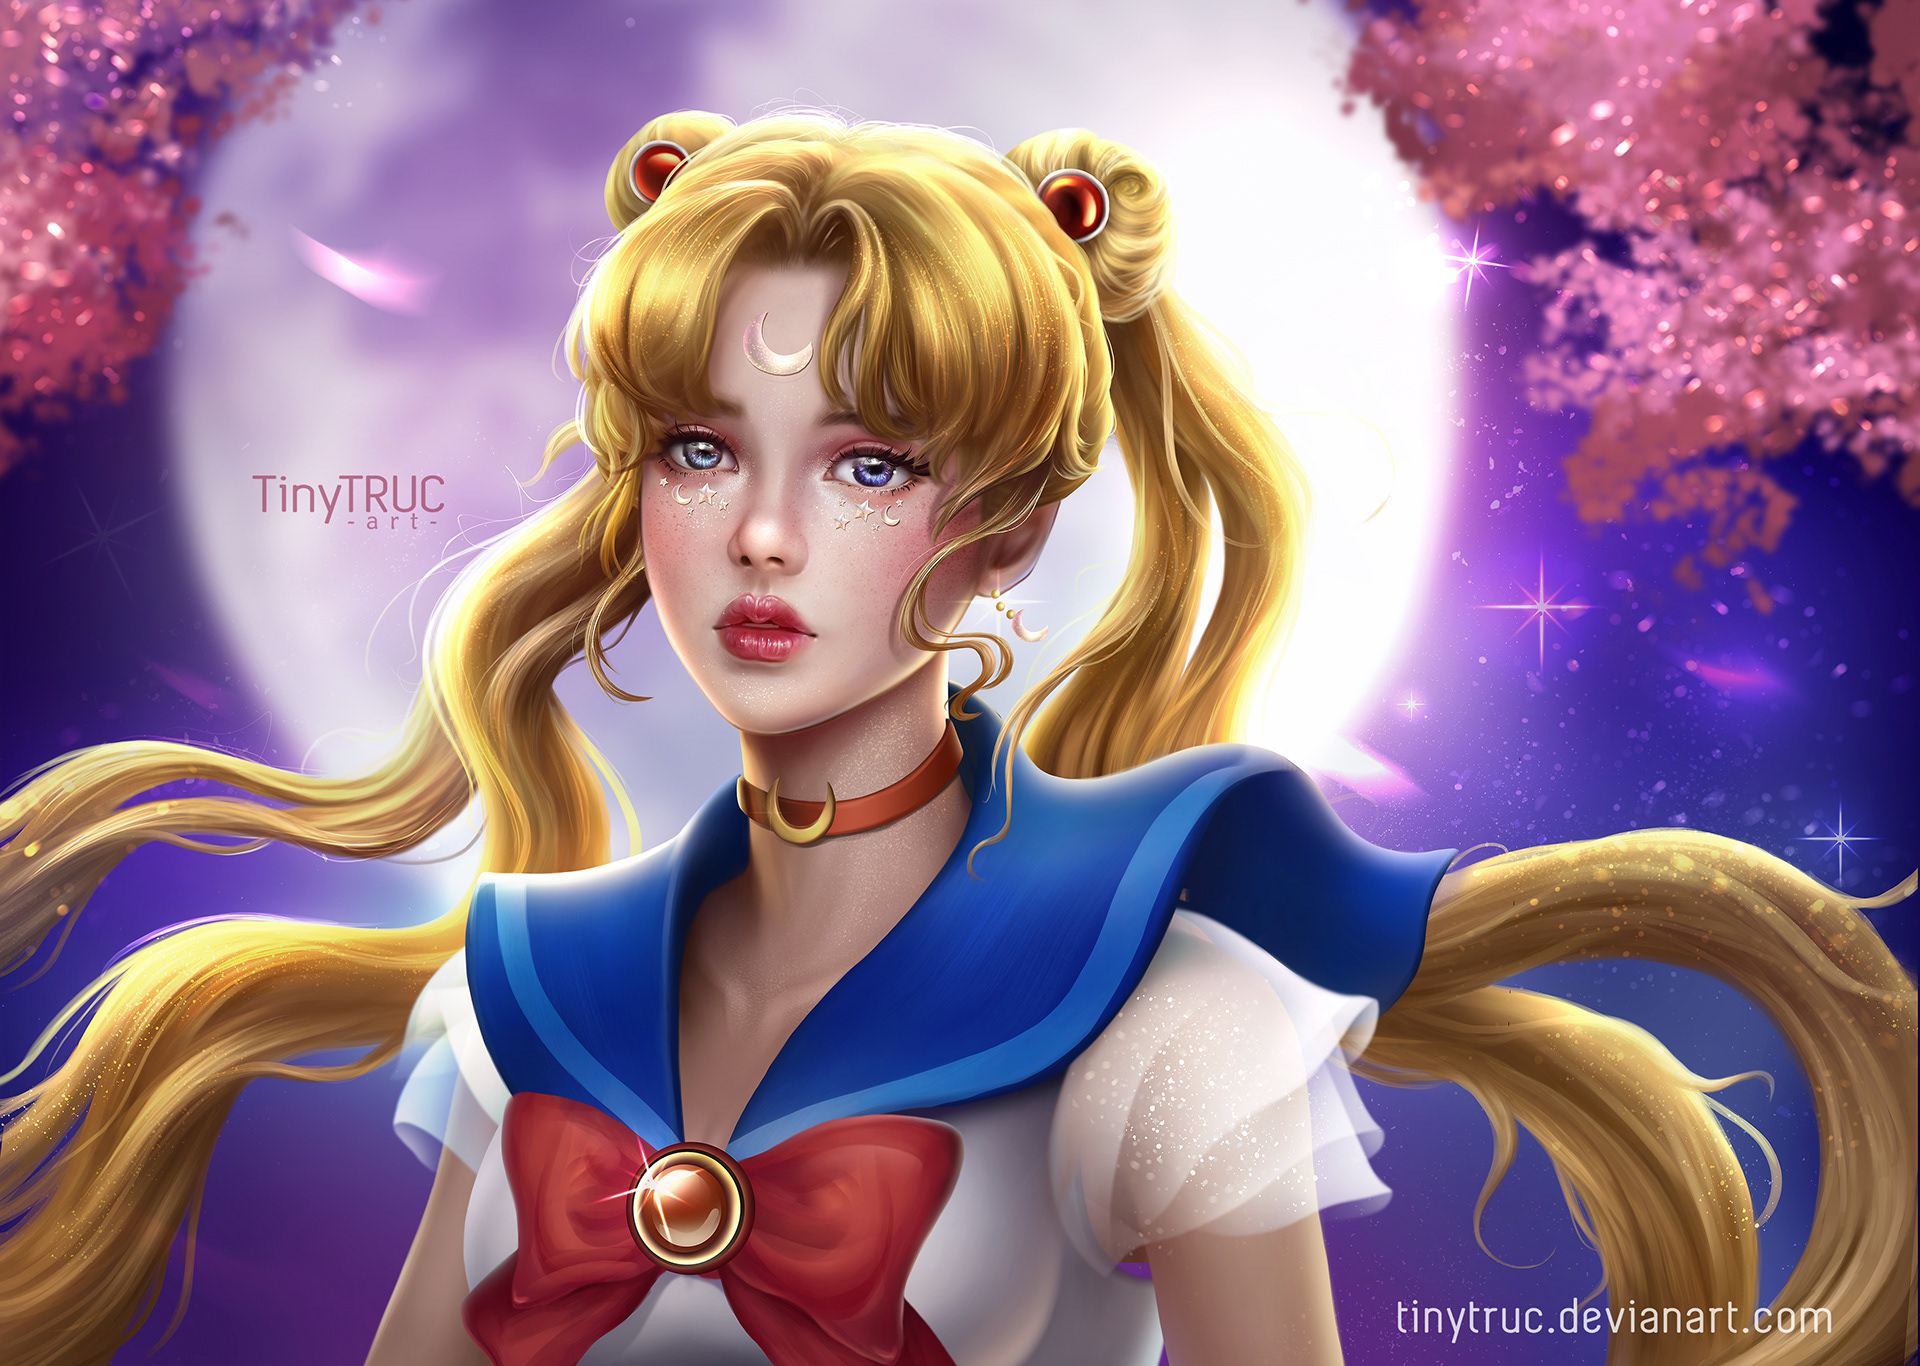 Stratford på Avon Læring Rådne Sailor Moon fan art portrait | Behance